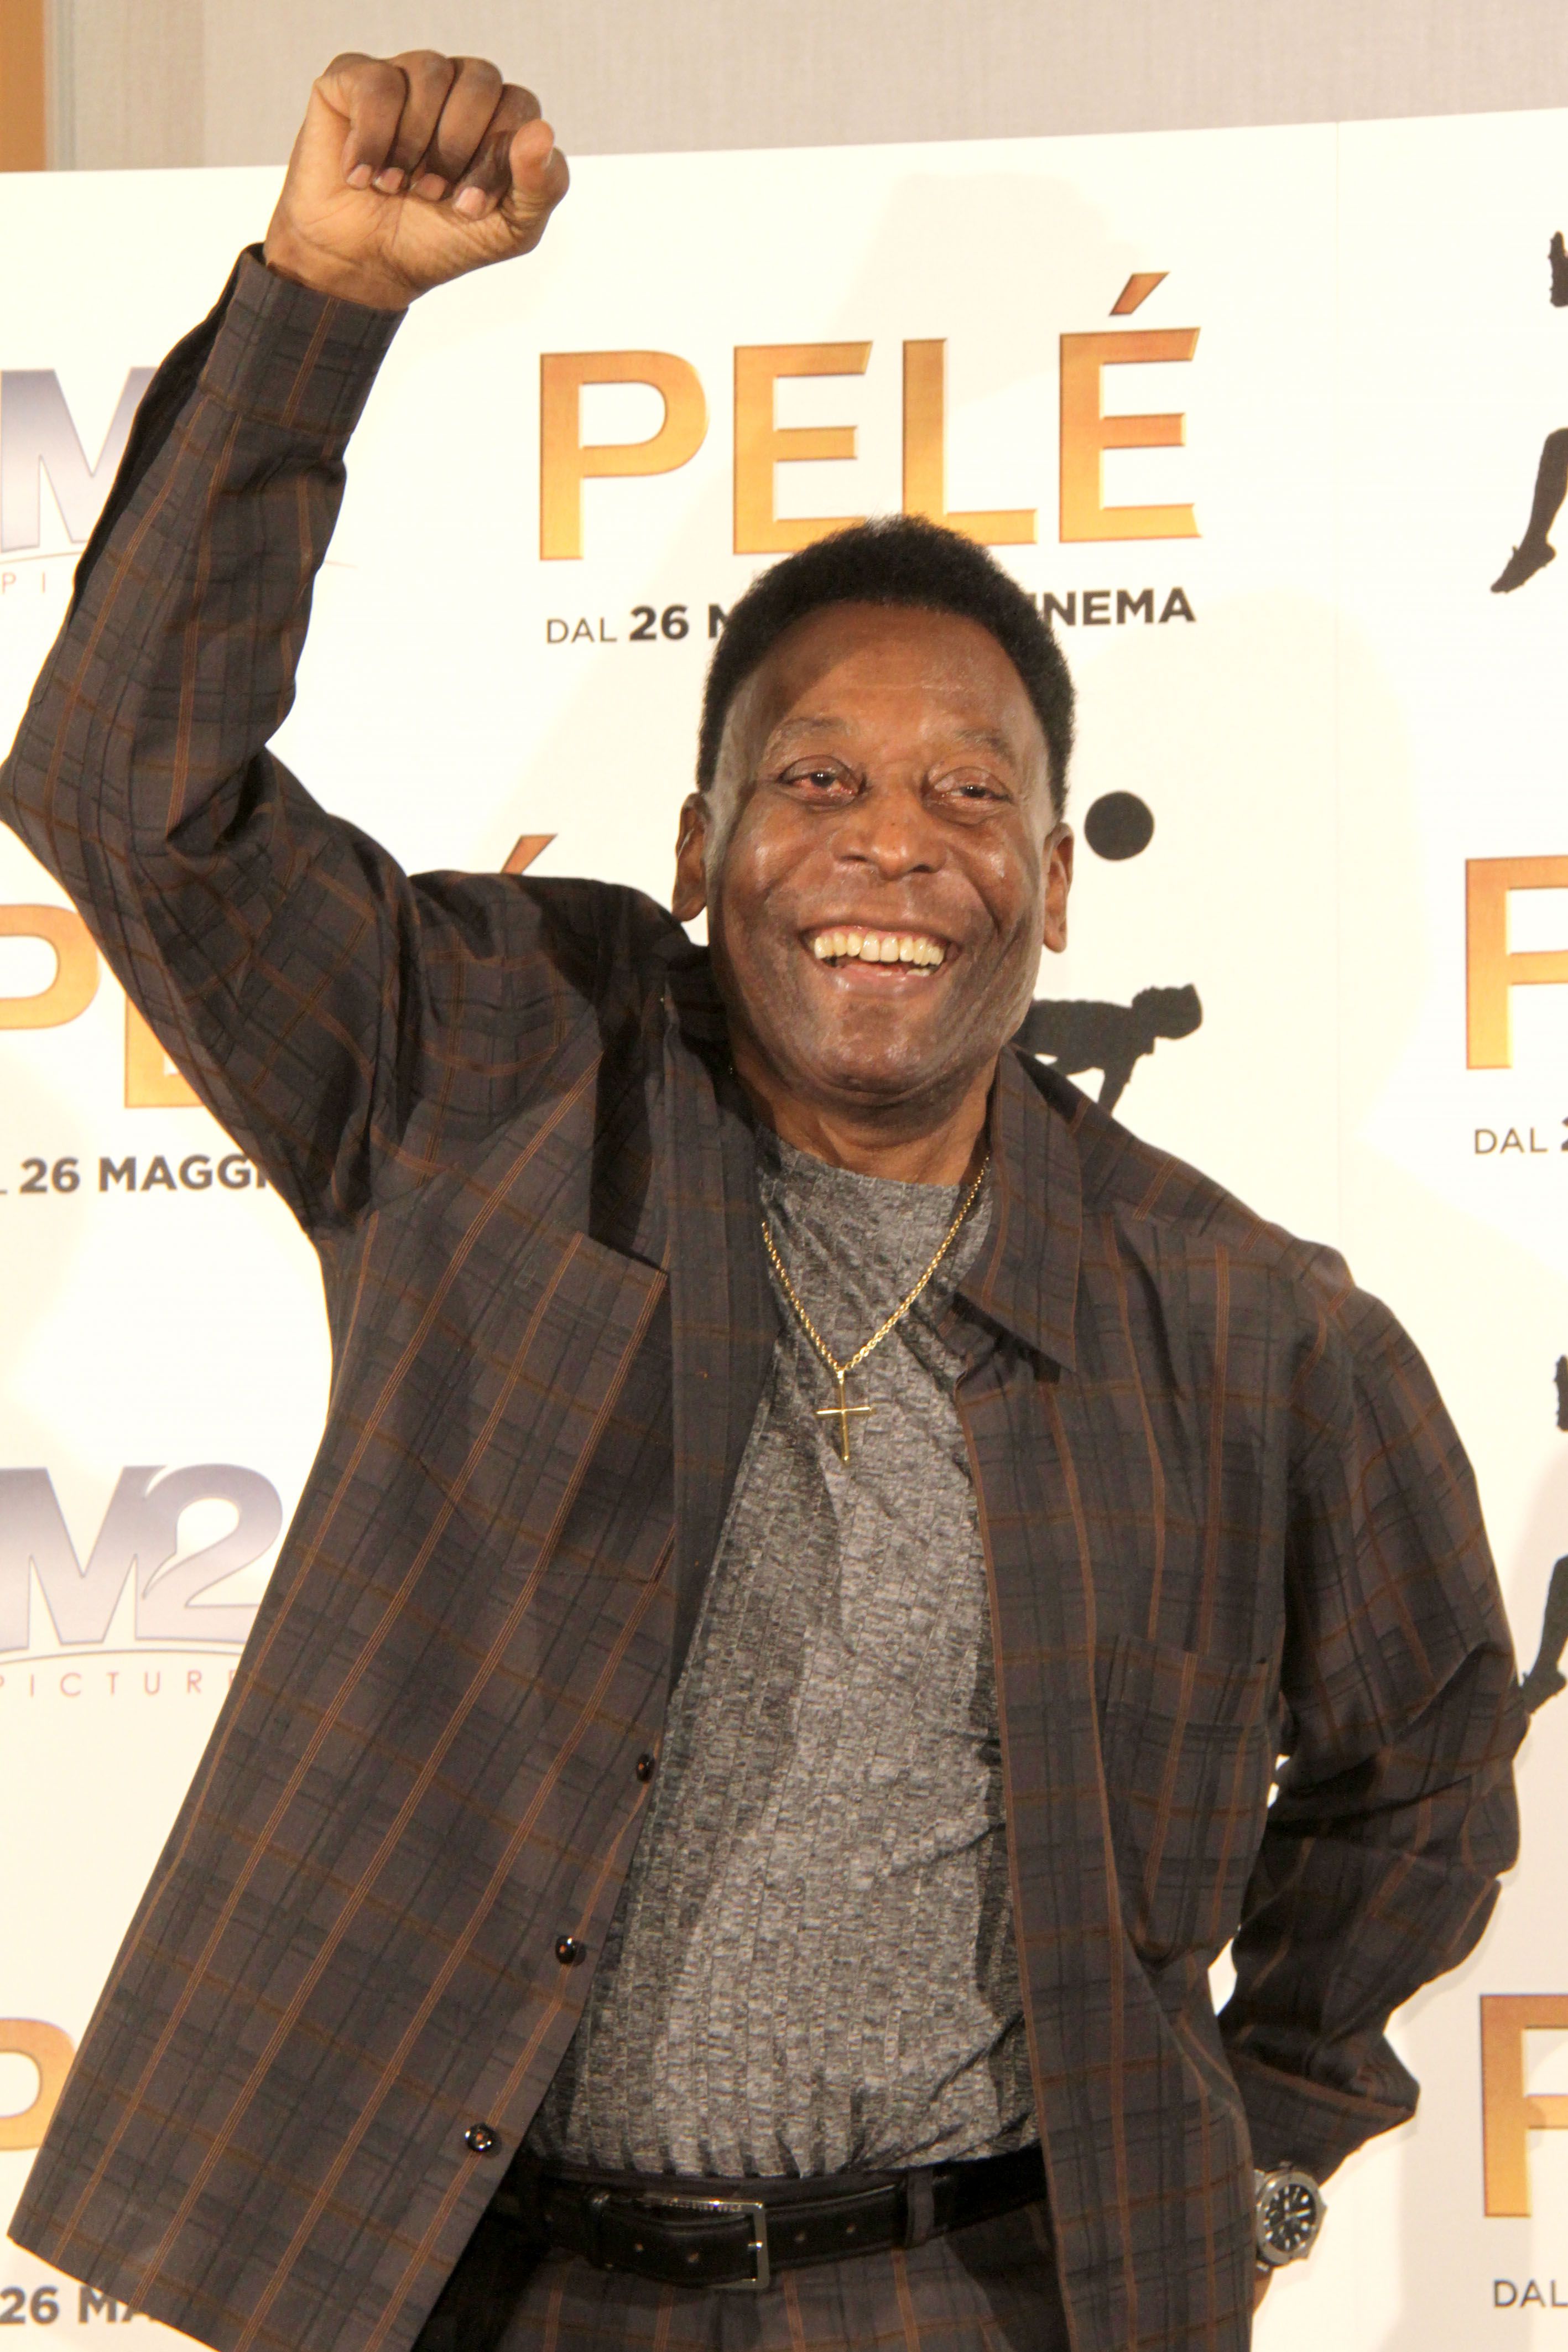 Pelé 80 éves lett, születésnapja alkalmából a FIFA készített róla egy dokumentumfilmet /Fotó: Northfoto